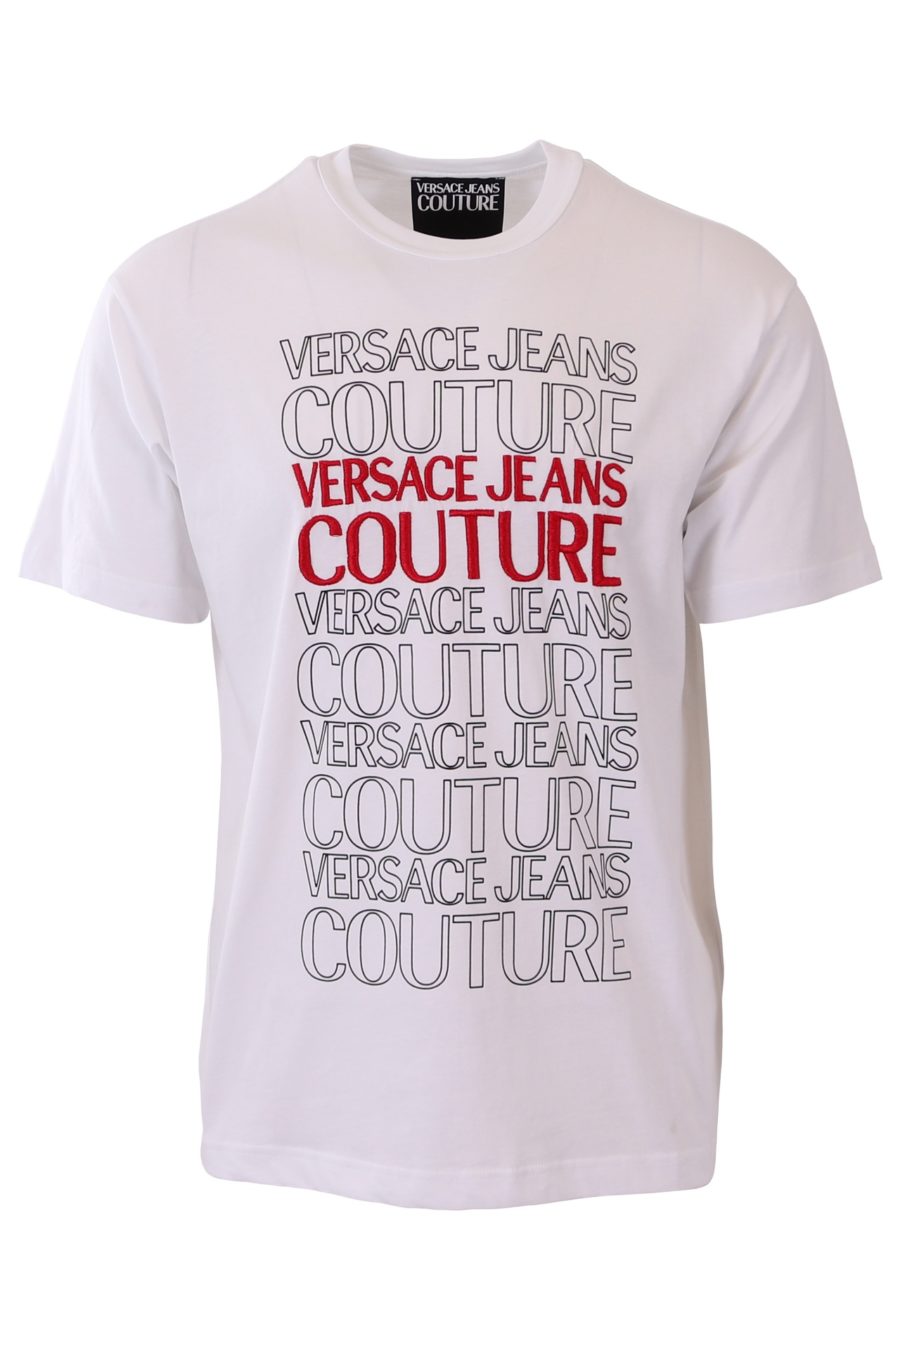 Camiseta Versace Jeans Couture blanca logo bordado rojo - 958fd534341f8764bf8e7a410d7313a831426aeb